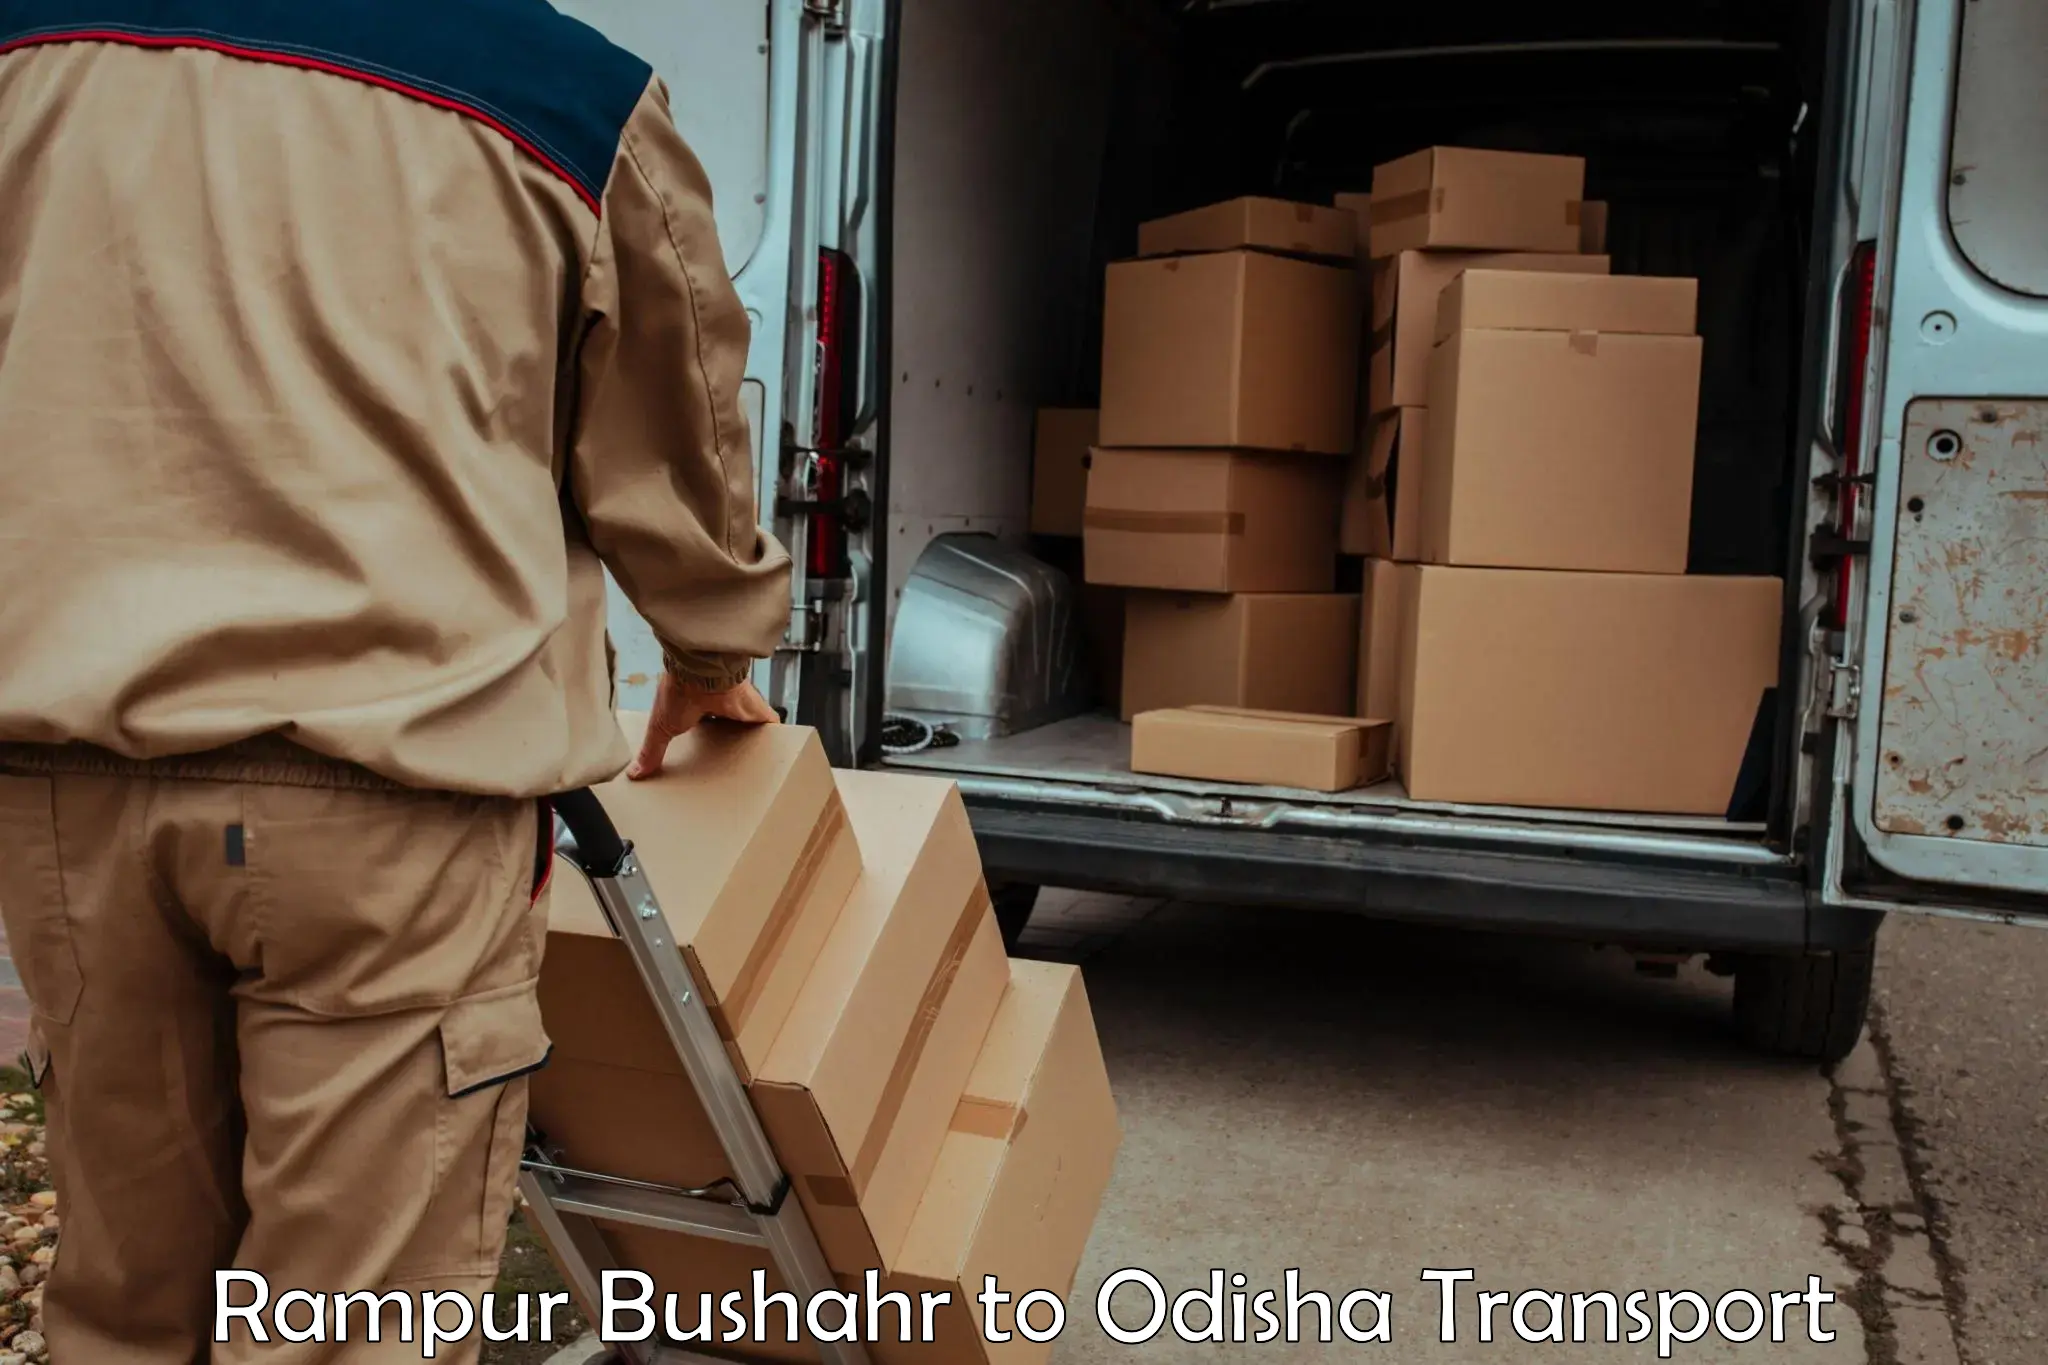 Cargo transport services in Rampur Bushahr to Joda